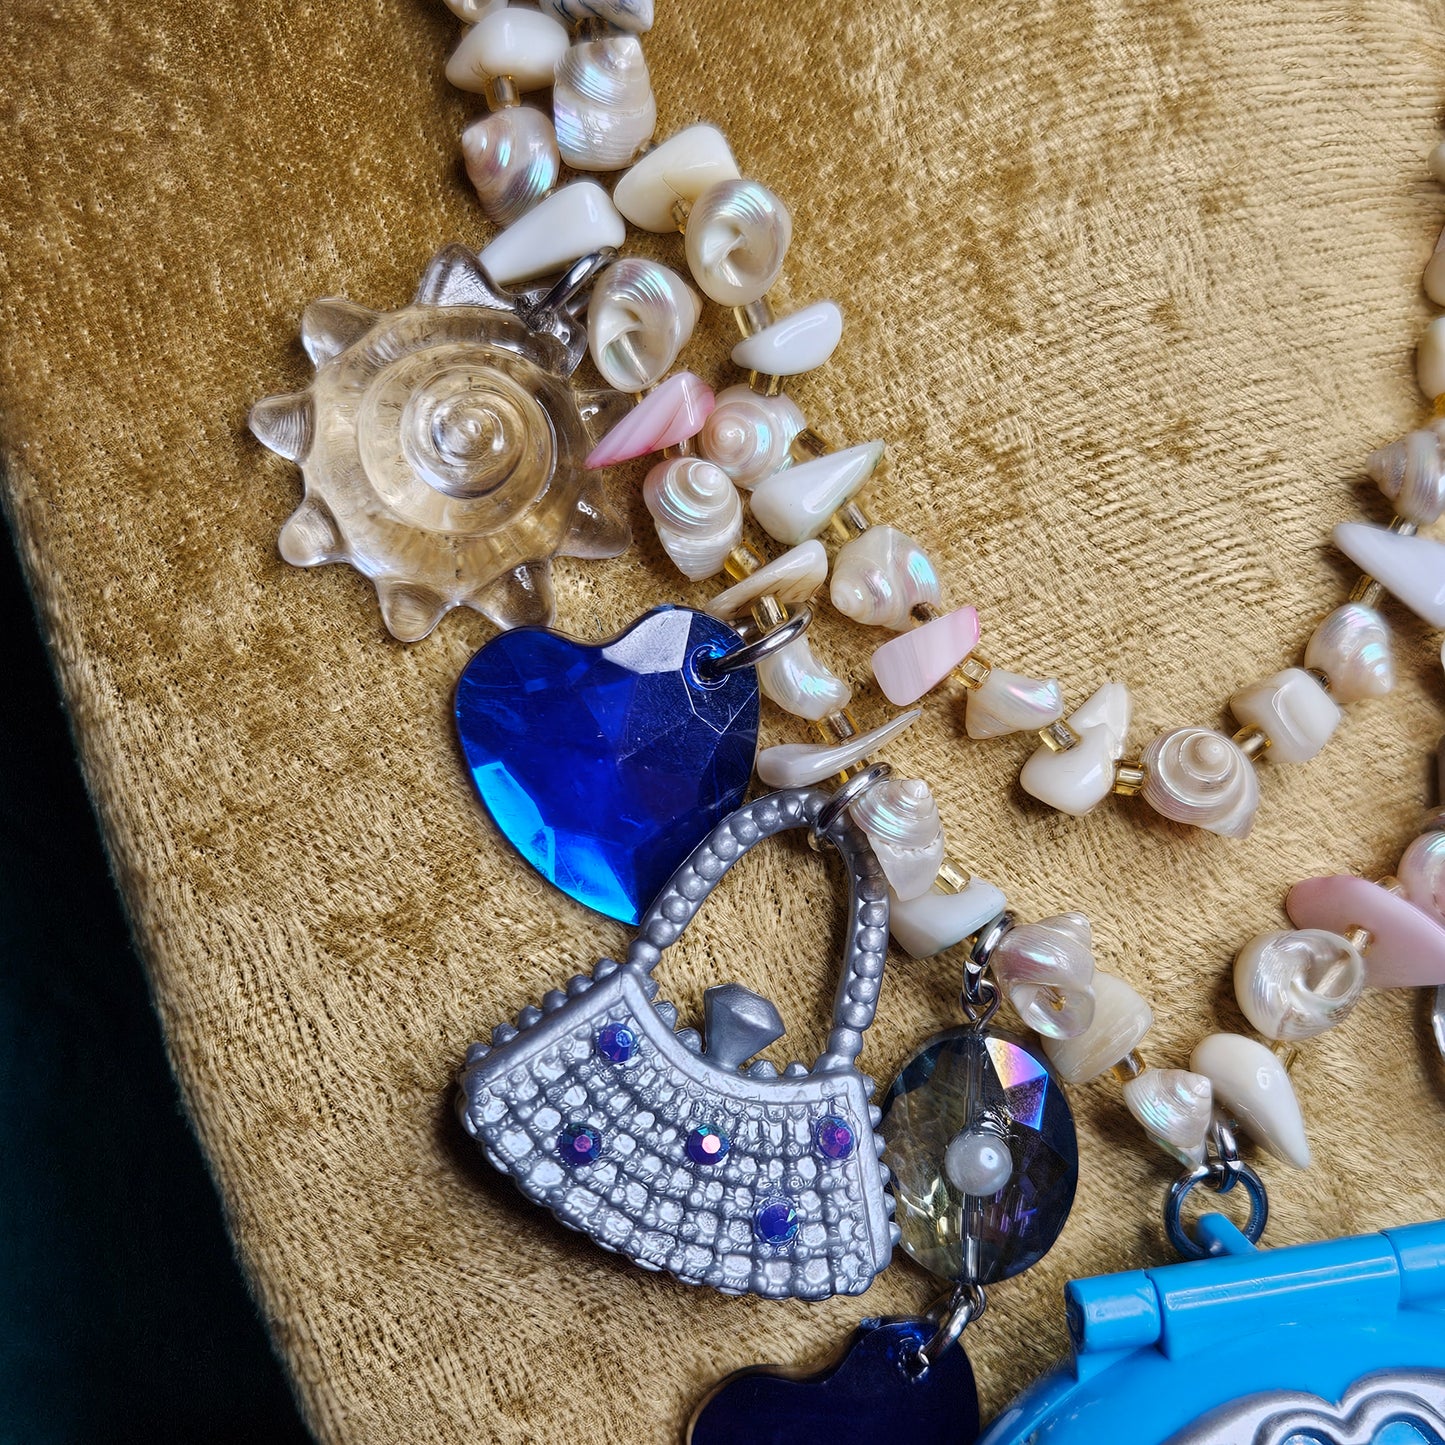 Sea Glam nostalgia charm necklace